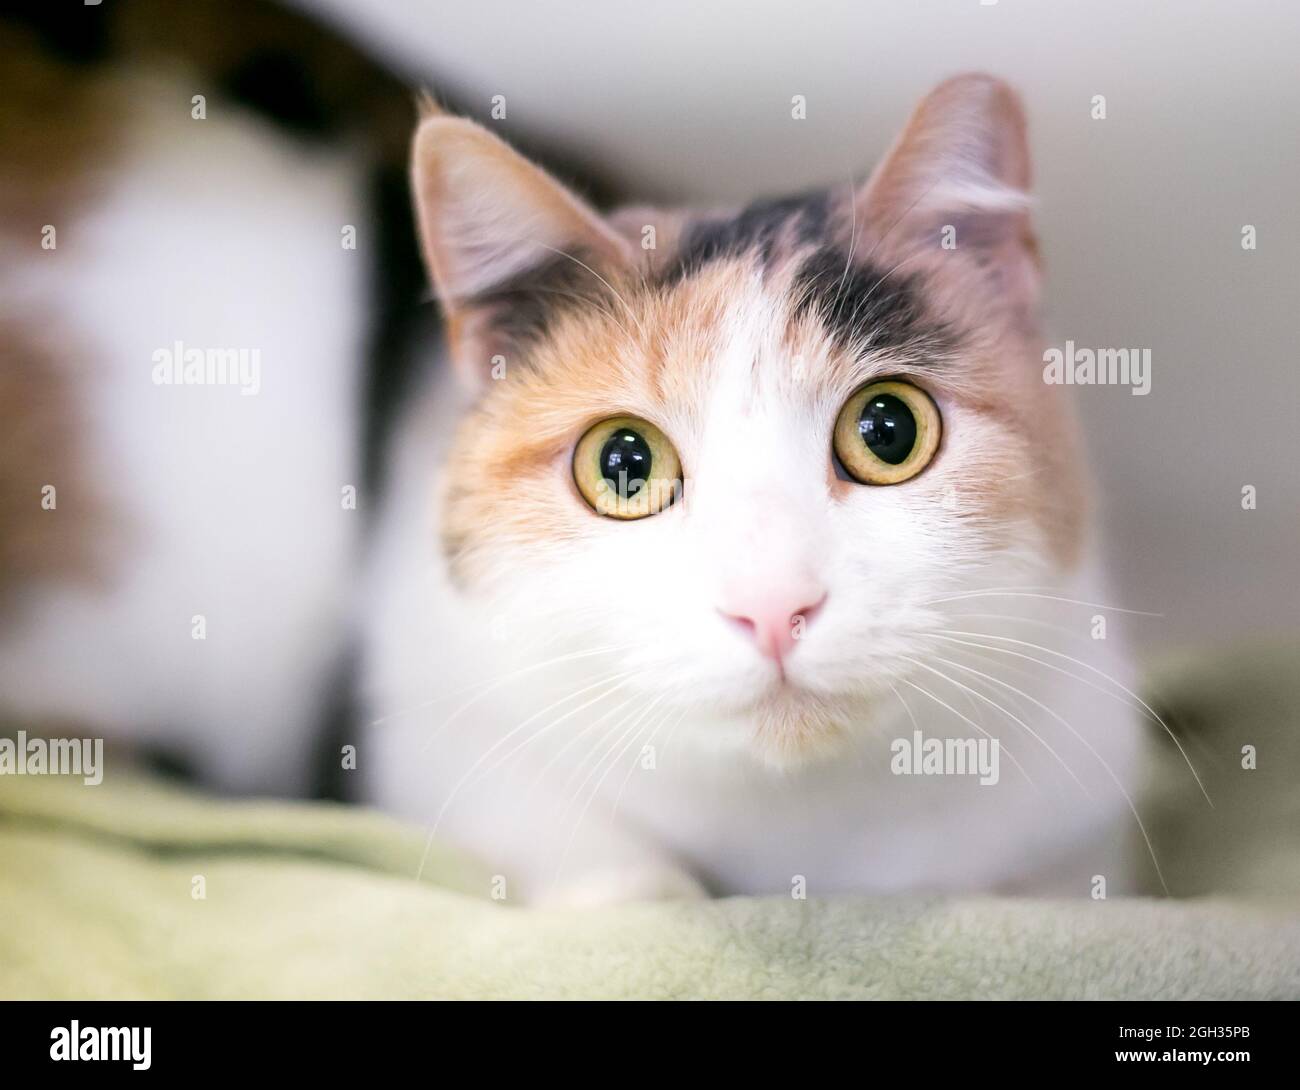 Un chat à large œil dilué Calico shorthair regardant la caméra avec des pupilles dilatées Banque D'Images